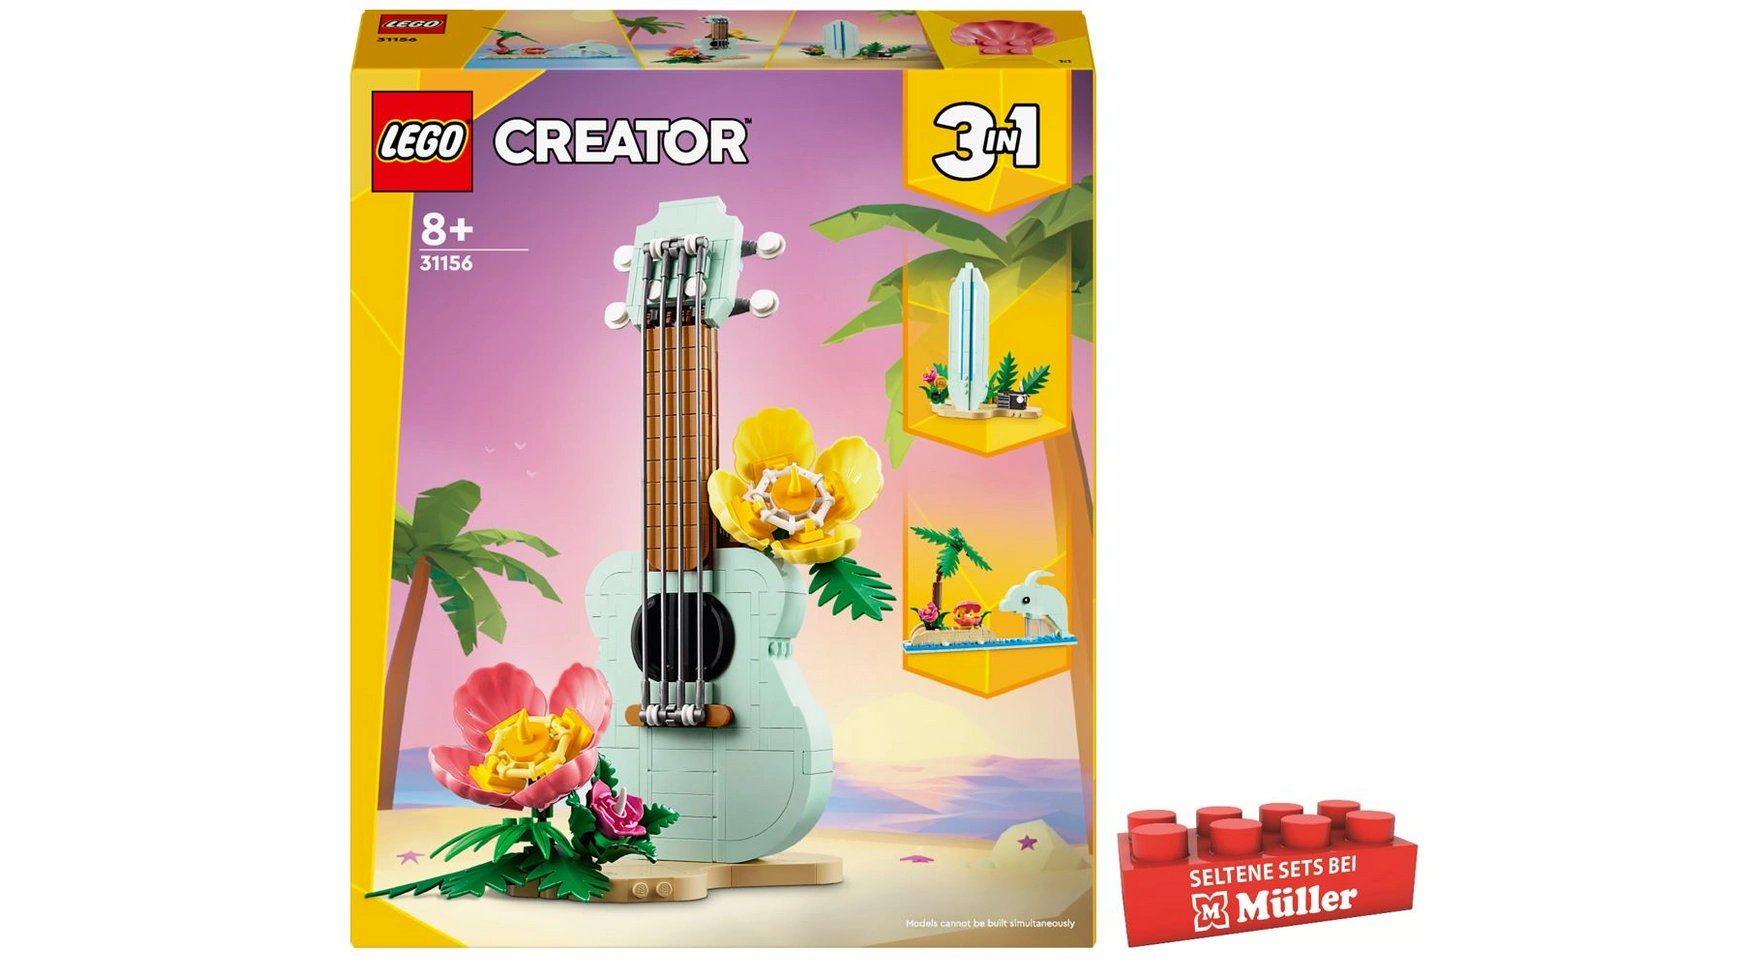 Lego Creator 3in1 Тропическая игрушка для укулеле, доски для серфинга или дельфина lego creator 3in1 игрушка с камерой в стиле ретро ​​3 модели украшения